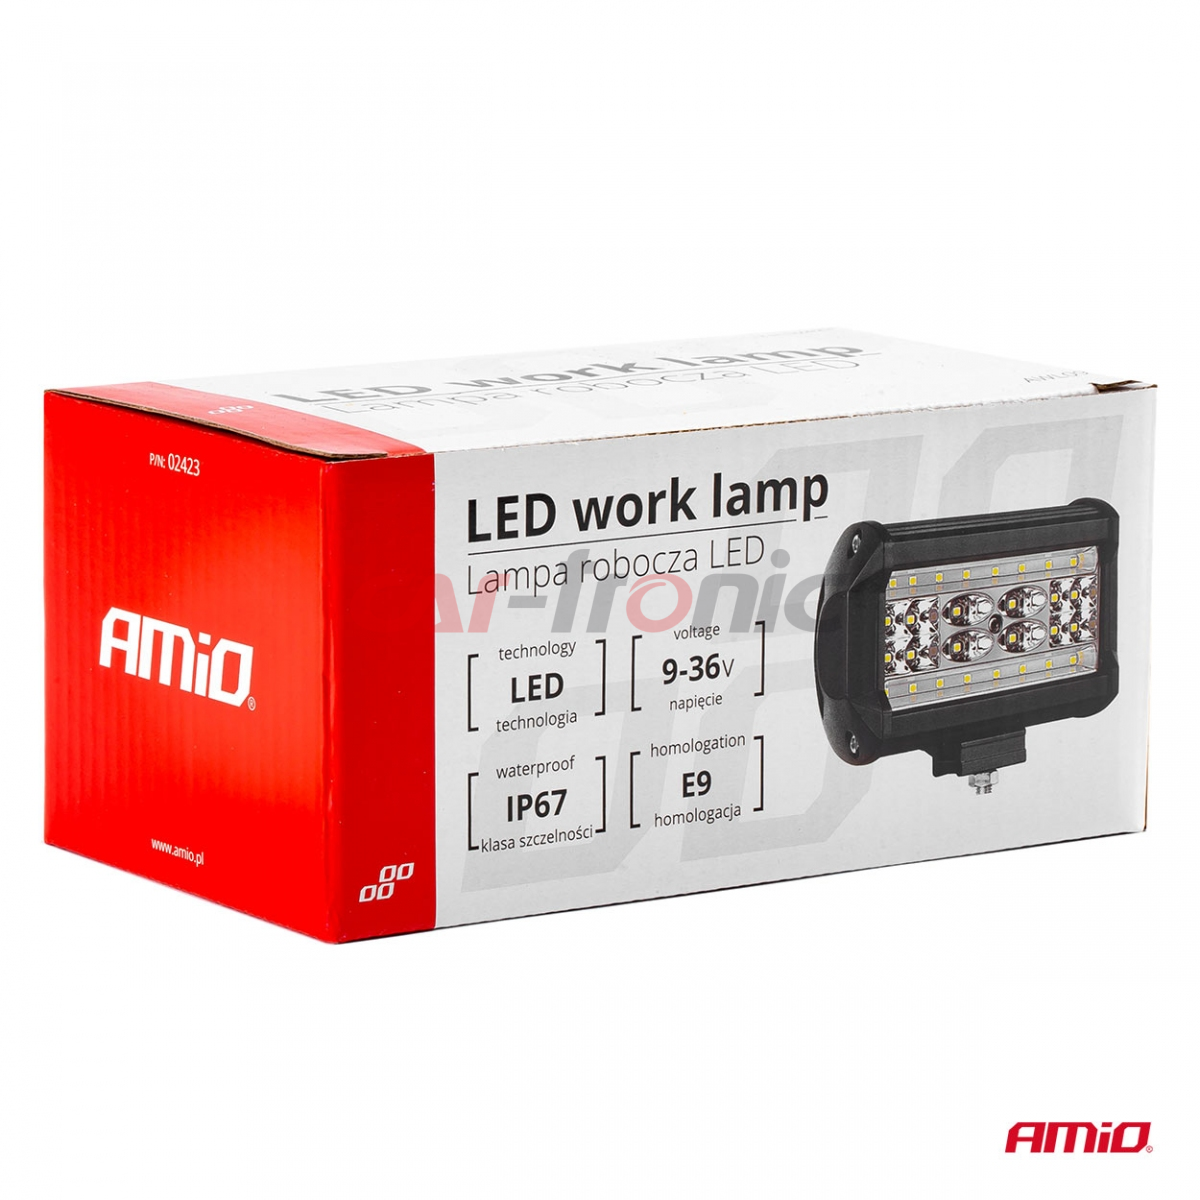 Lampa robocza halogen LED szperacz AWL09 28 LED AMIO-02423